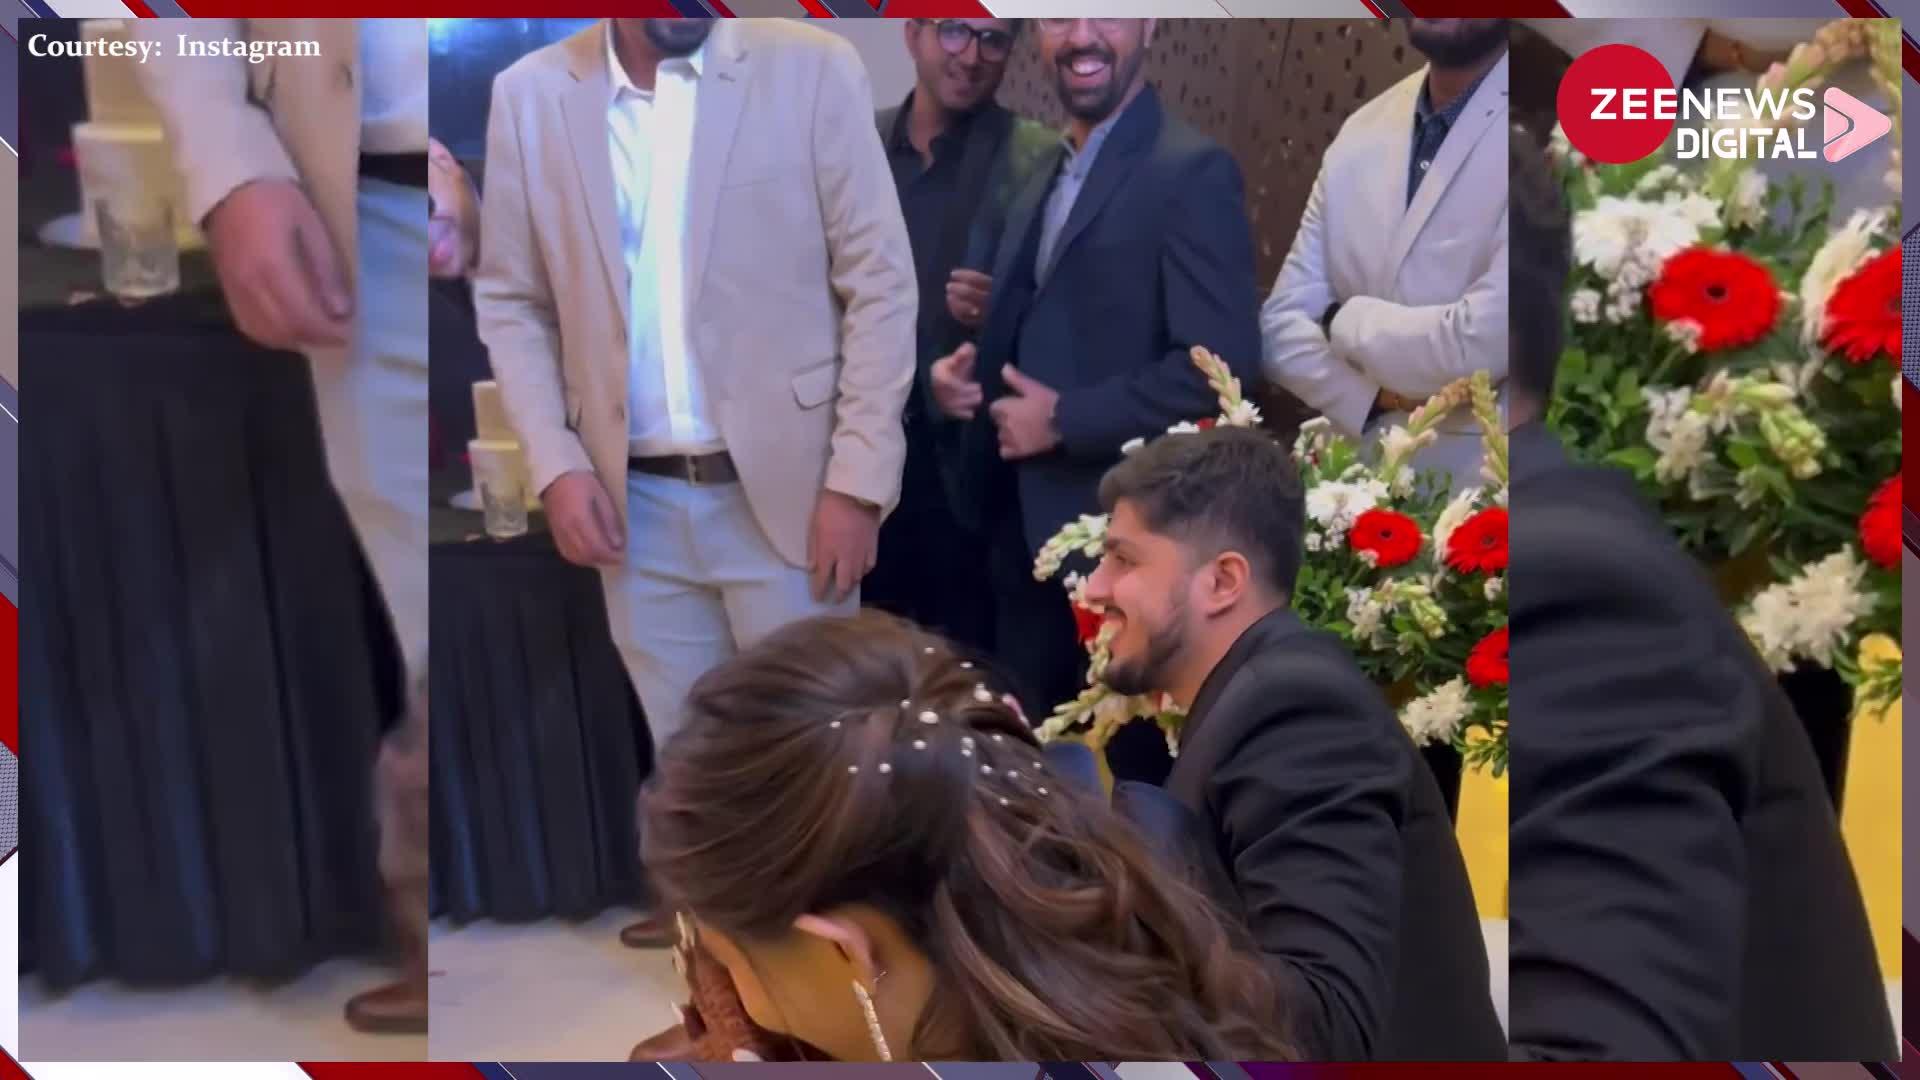 Wedding Video: दुल्हन को सरप्राइज करने के लिए दूल्हे ने किया ऐसा काम, देख हर कोई मारने लगा सीटियां